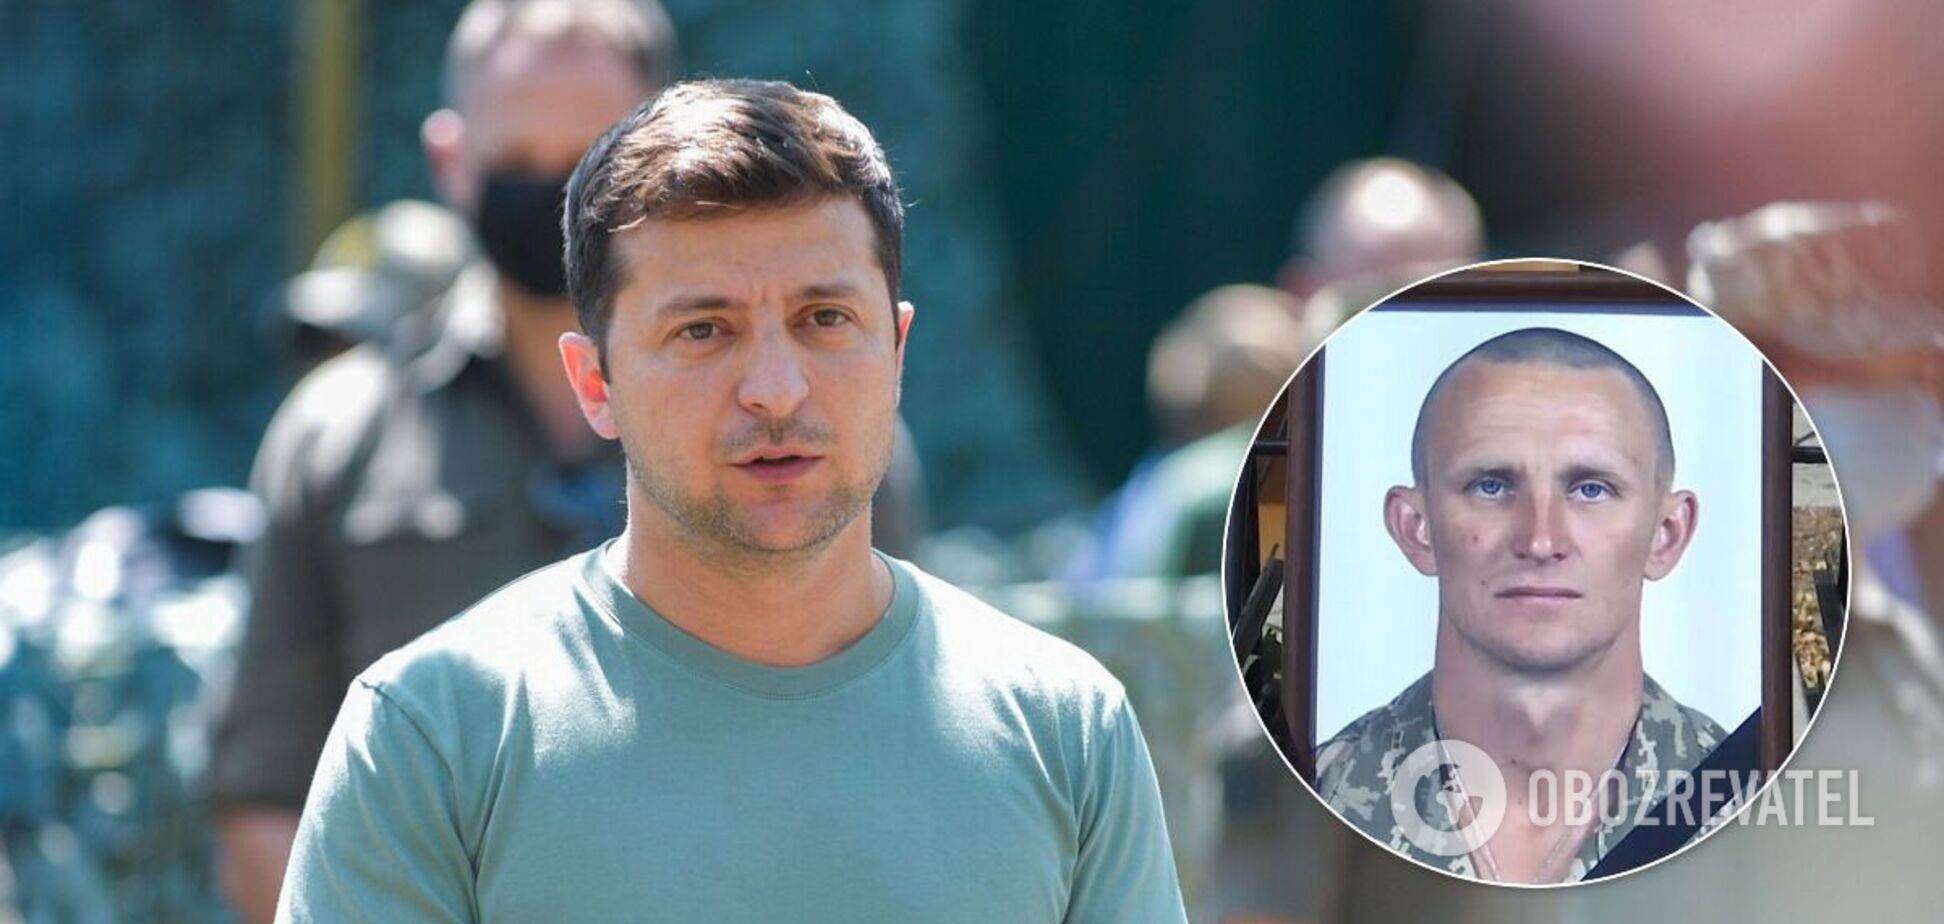 ДБР зобов'язали відкрити провадження проти Зеленського через смерть морпіха Журавля на Донбасі